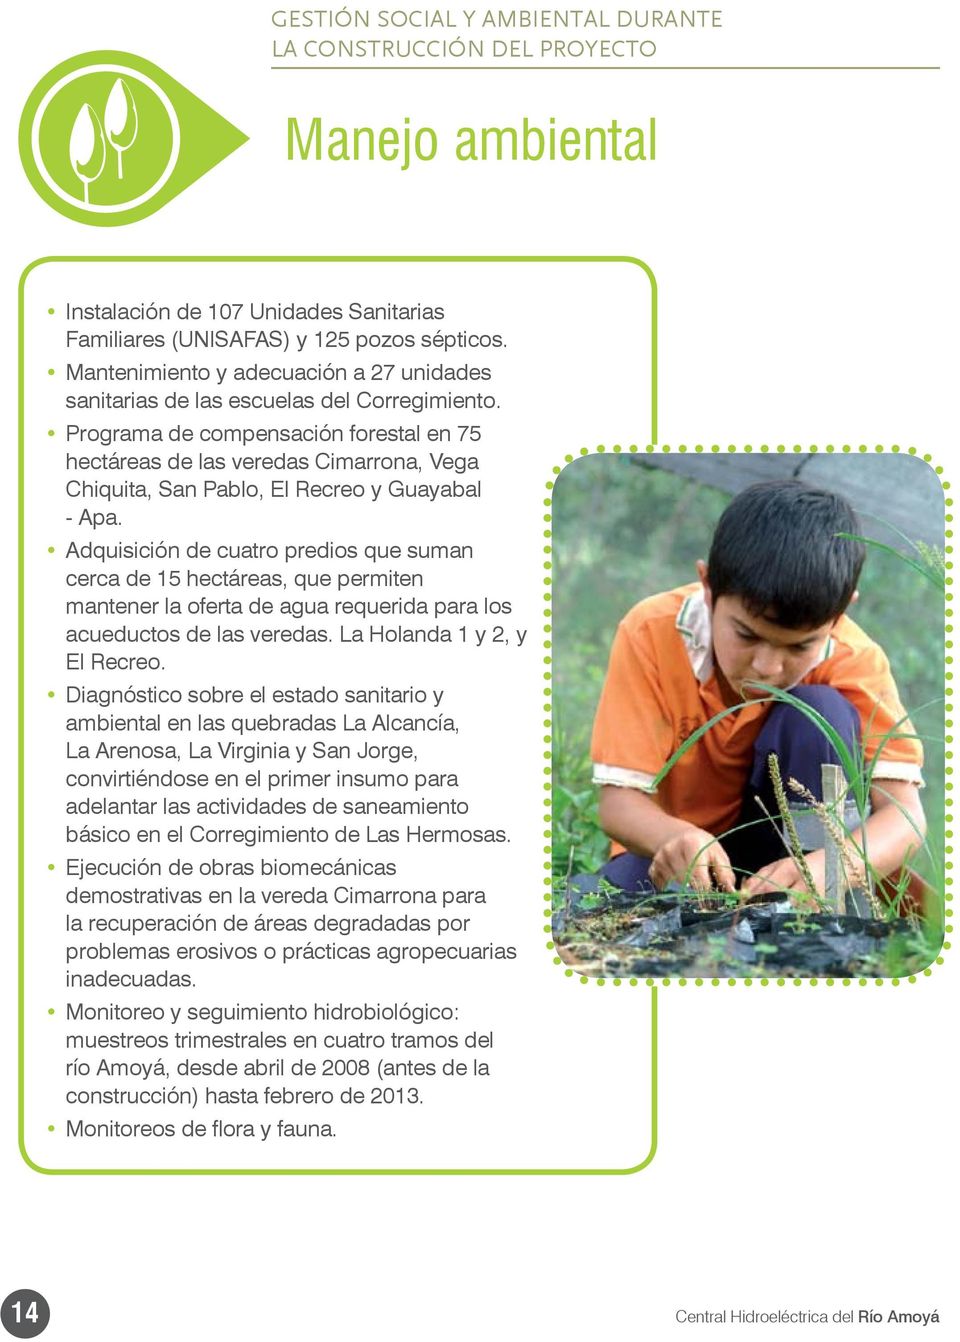 Programa de compensación forestal en 75 hectáreas de las veredas Cimarrona, Vega Chiquita, San Pablo, El Recreo y Guayabal - Apa.